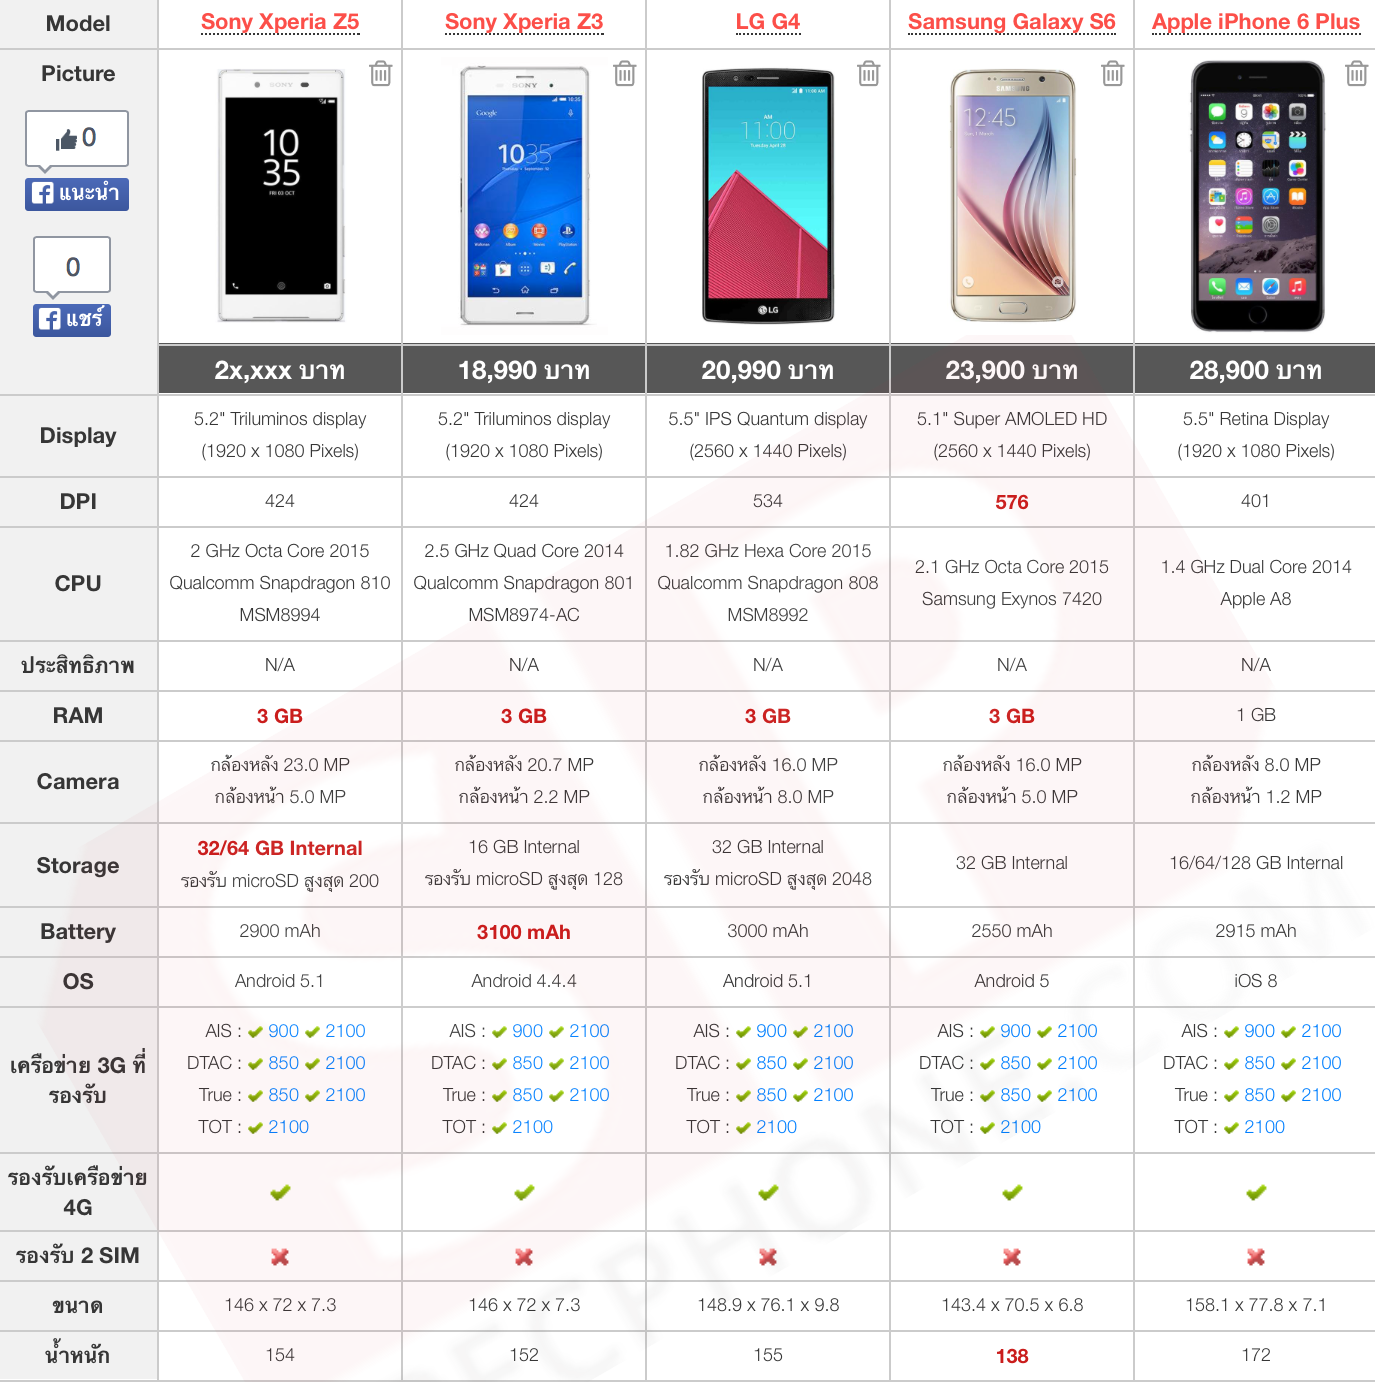 เปรียบเทียบภาพถ่าย Xperia Z5, Xperia Z3, Galaxy S6, LG G4 และ iPhone 6 Plus